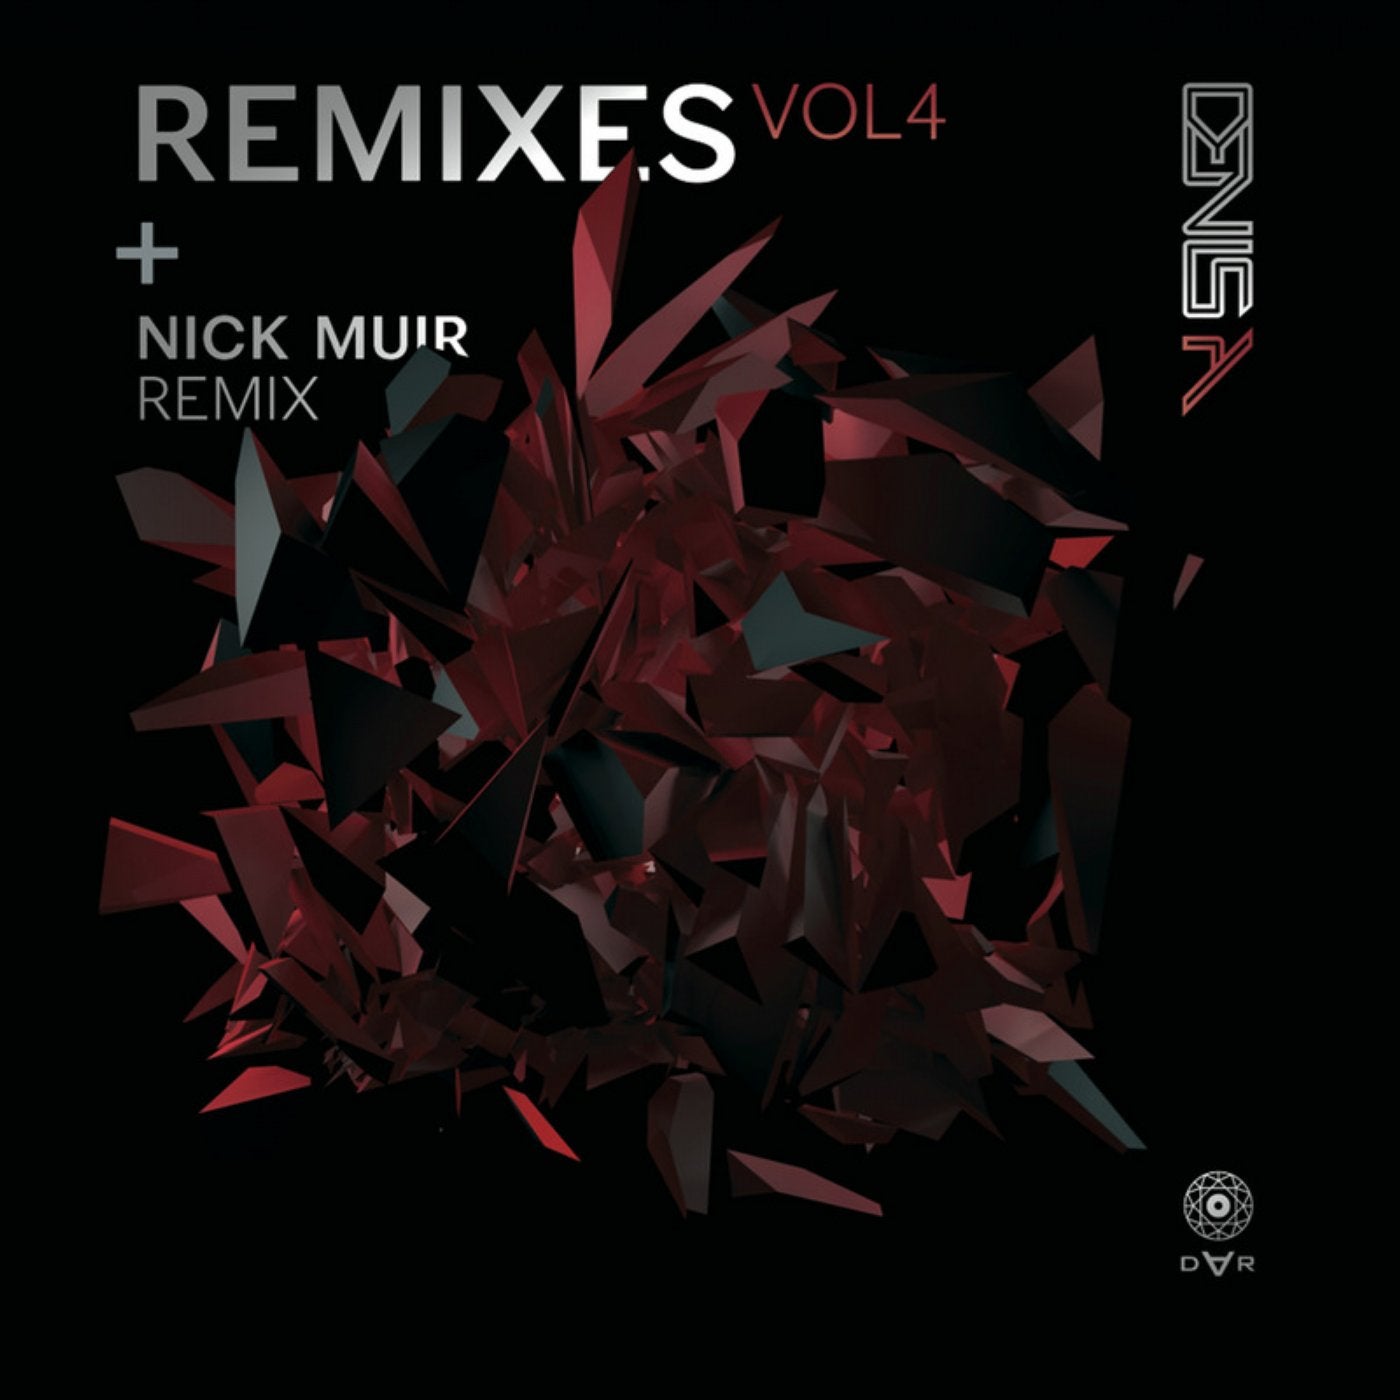 Nik remix. 2010 - Remixes Volume 3.